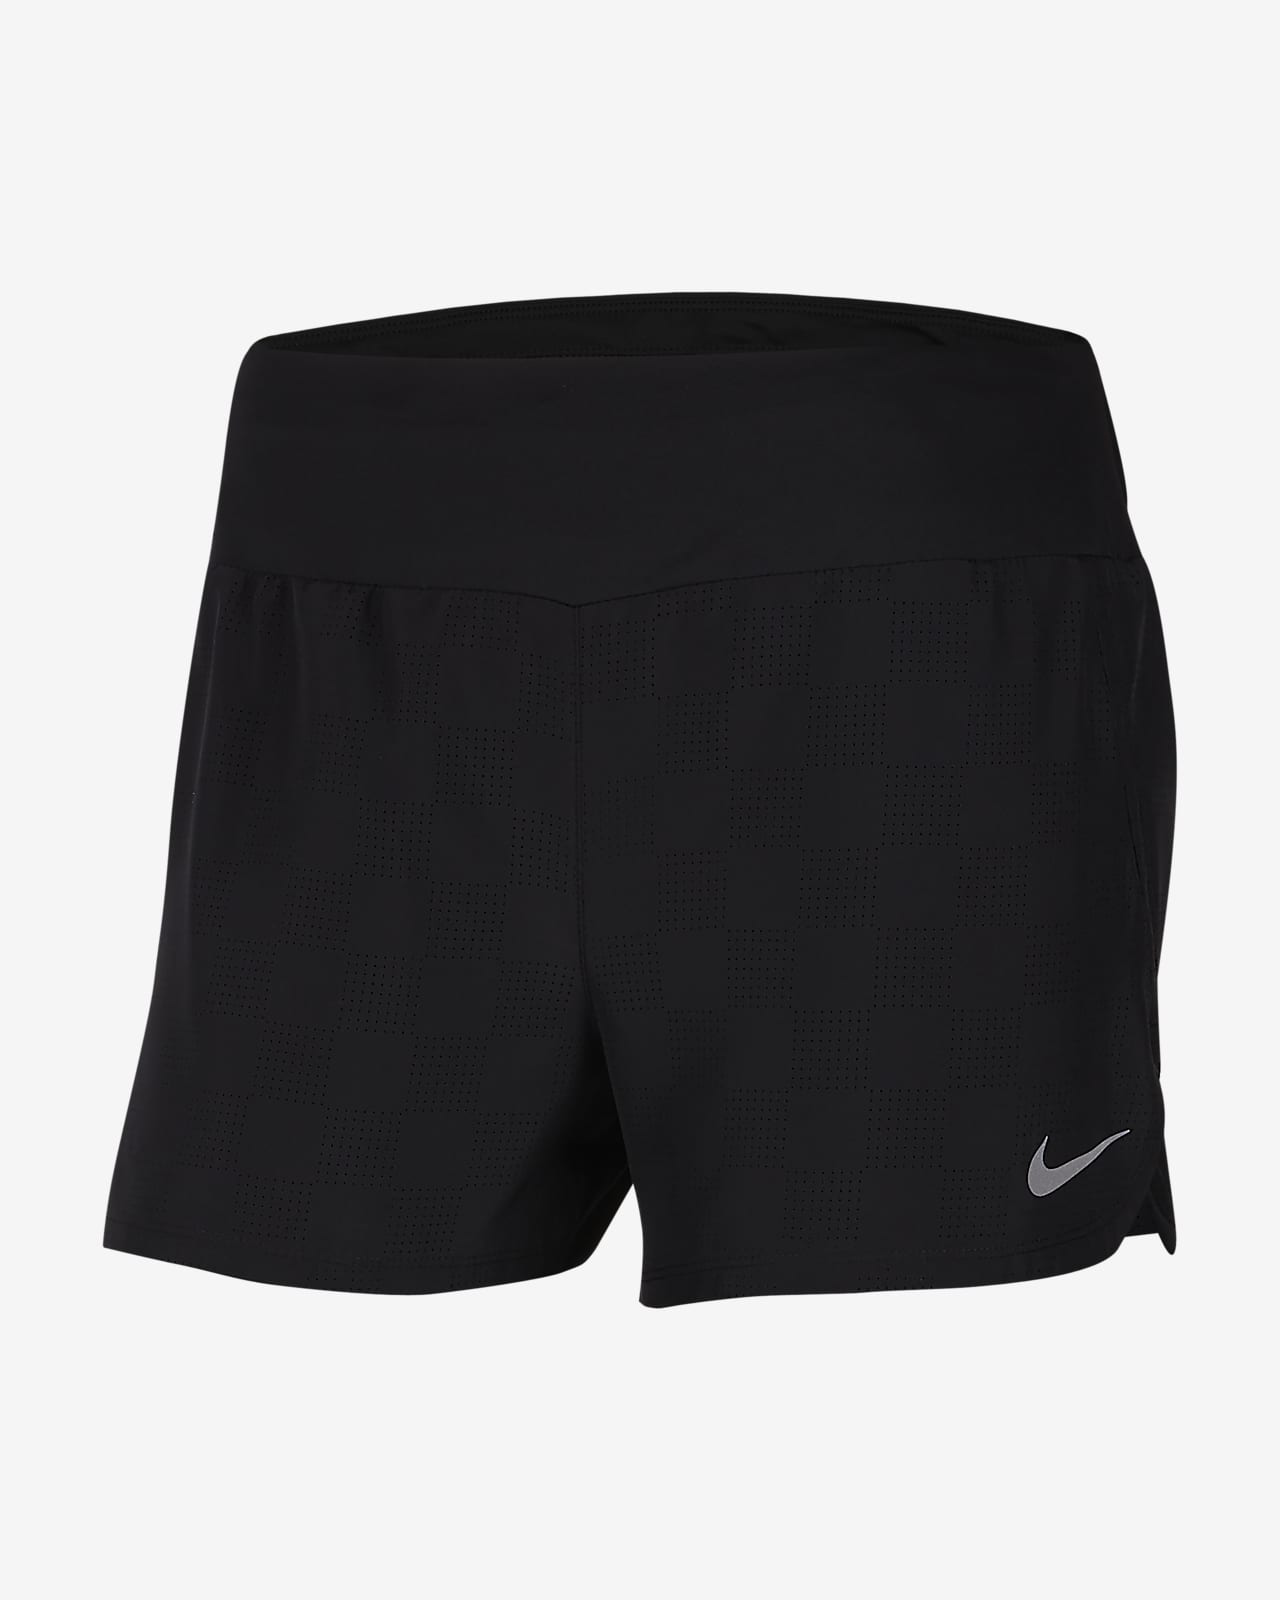 Nike Women's Crew Shorts. Nike.com